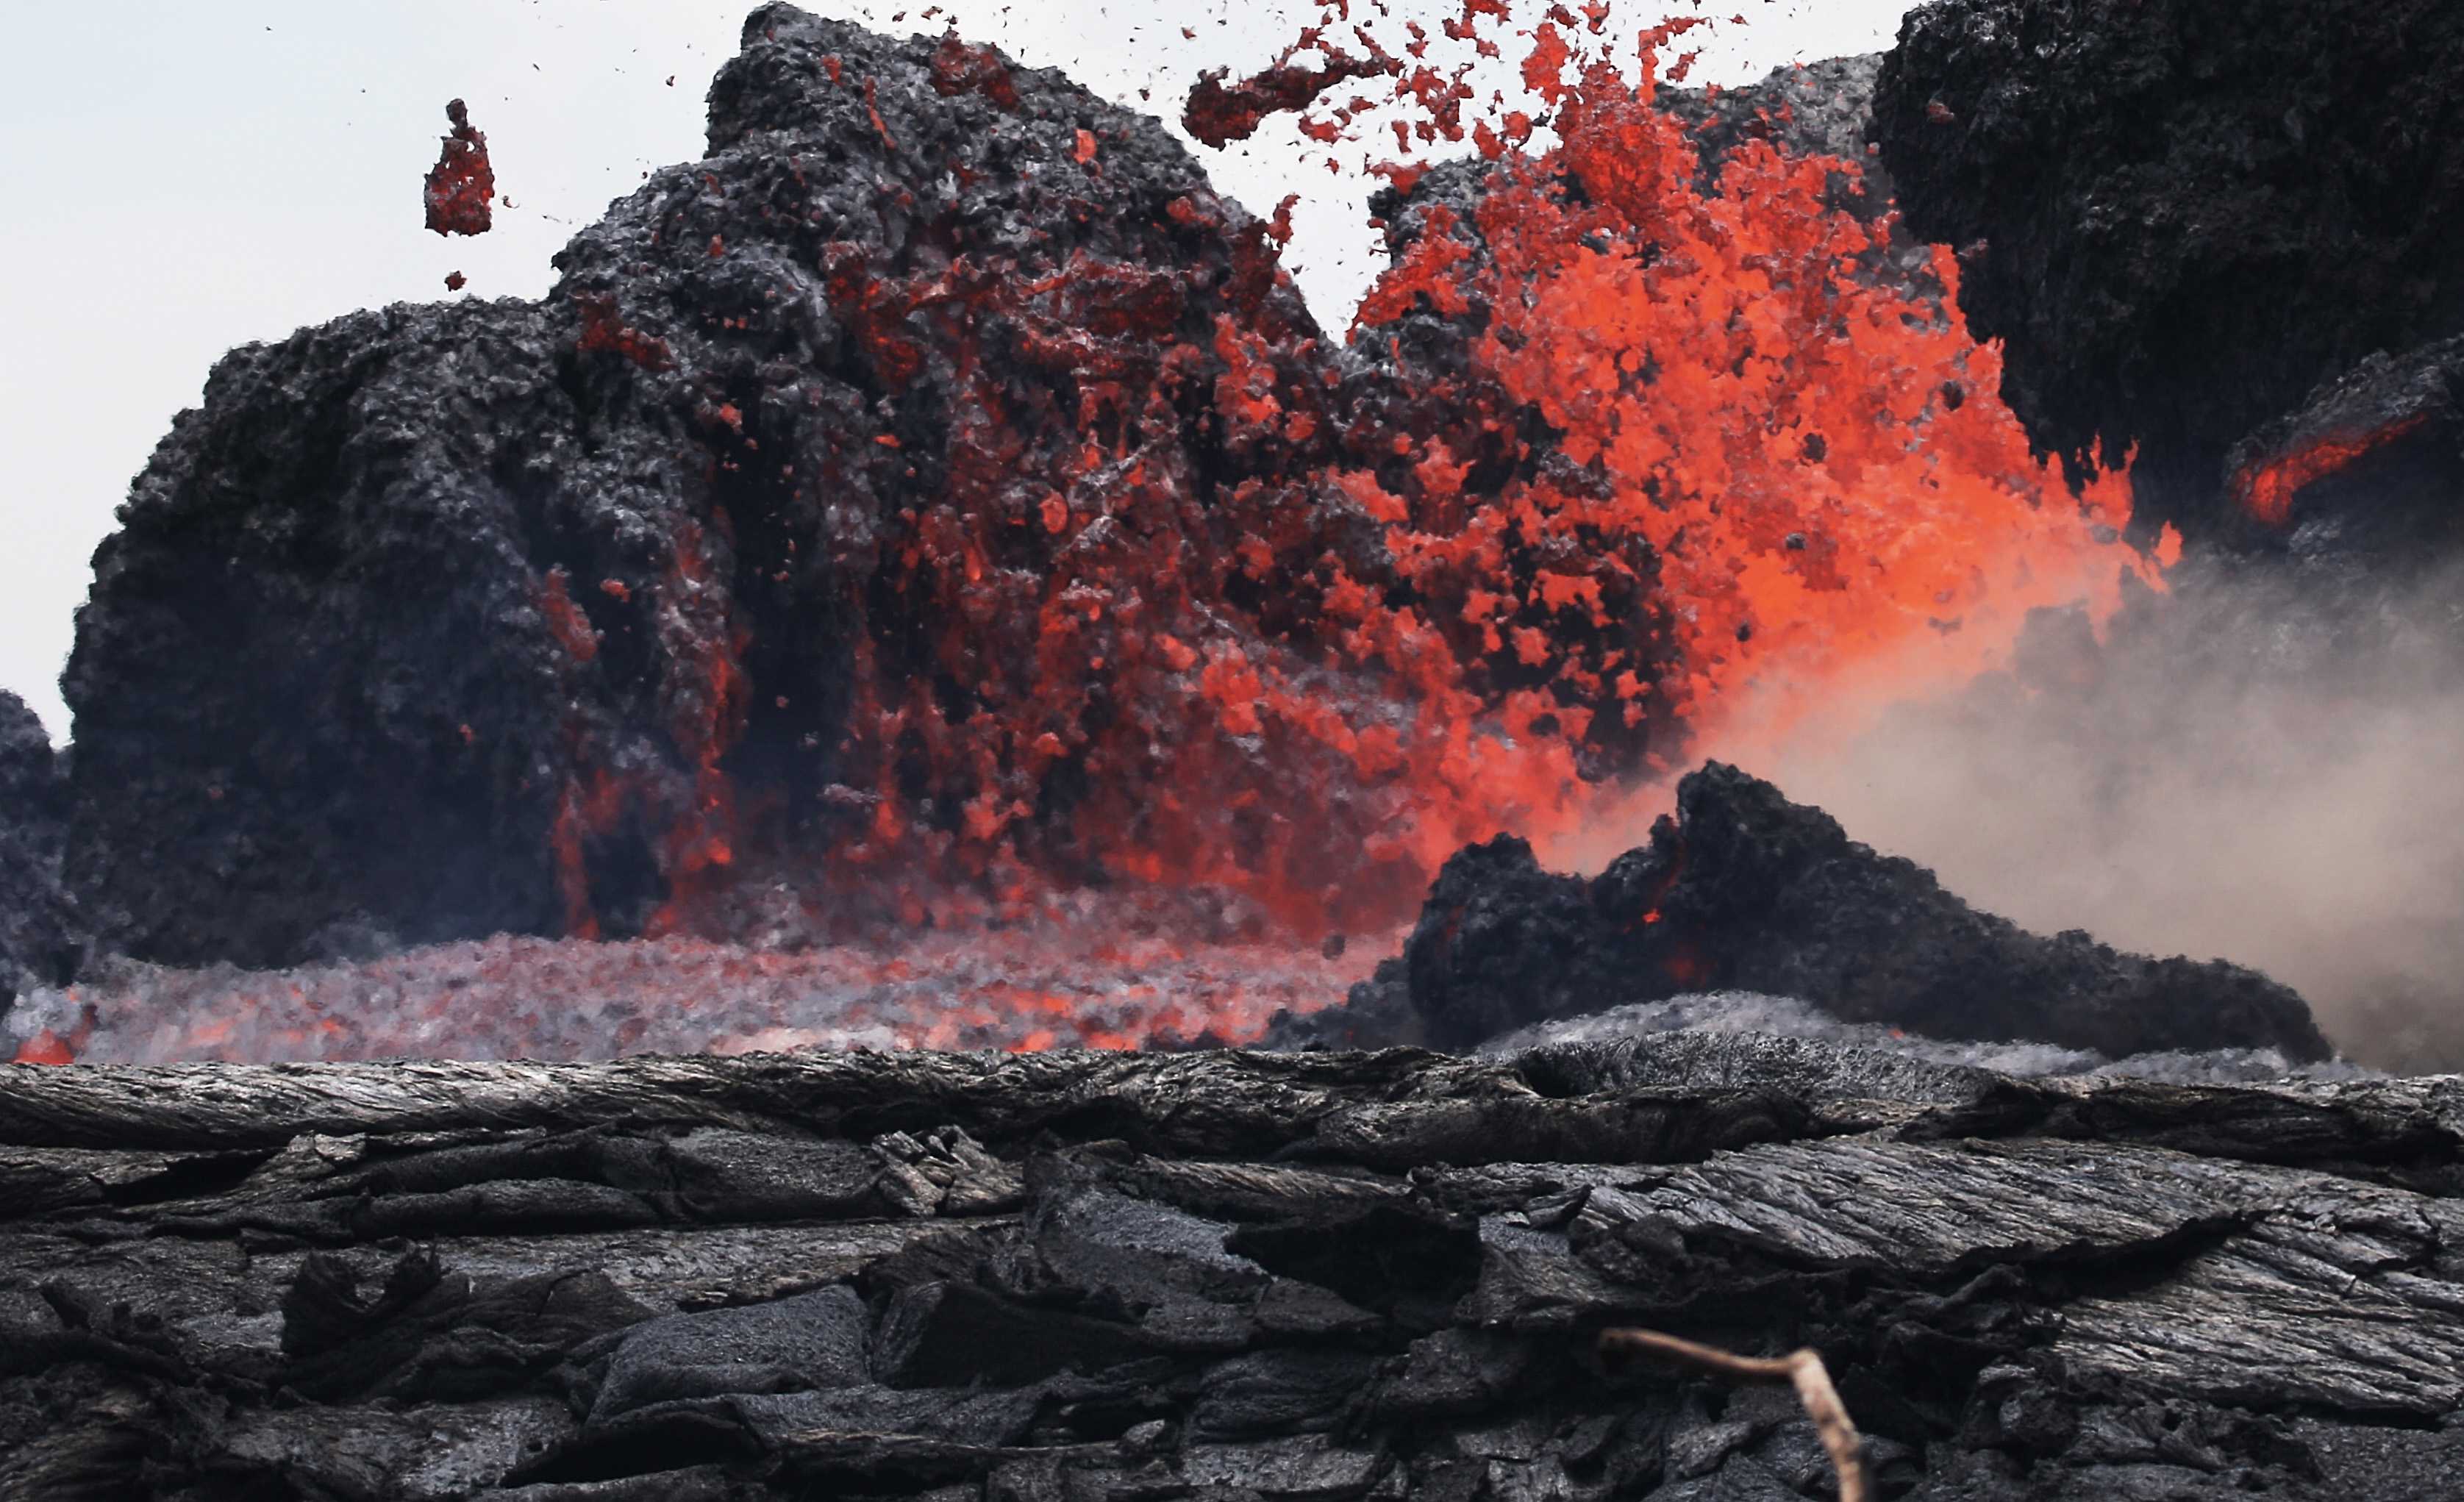 Впервые за 40 лет начал извергаться Мауна-Лоа - крупнейший активный вулкан в мире